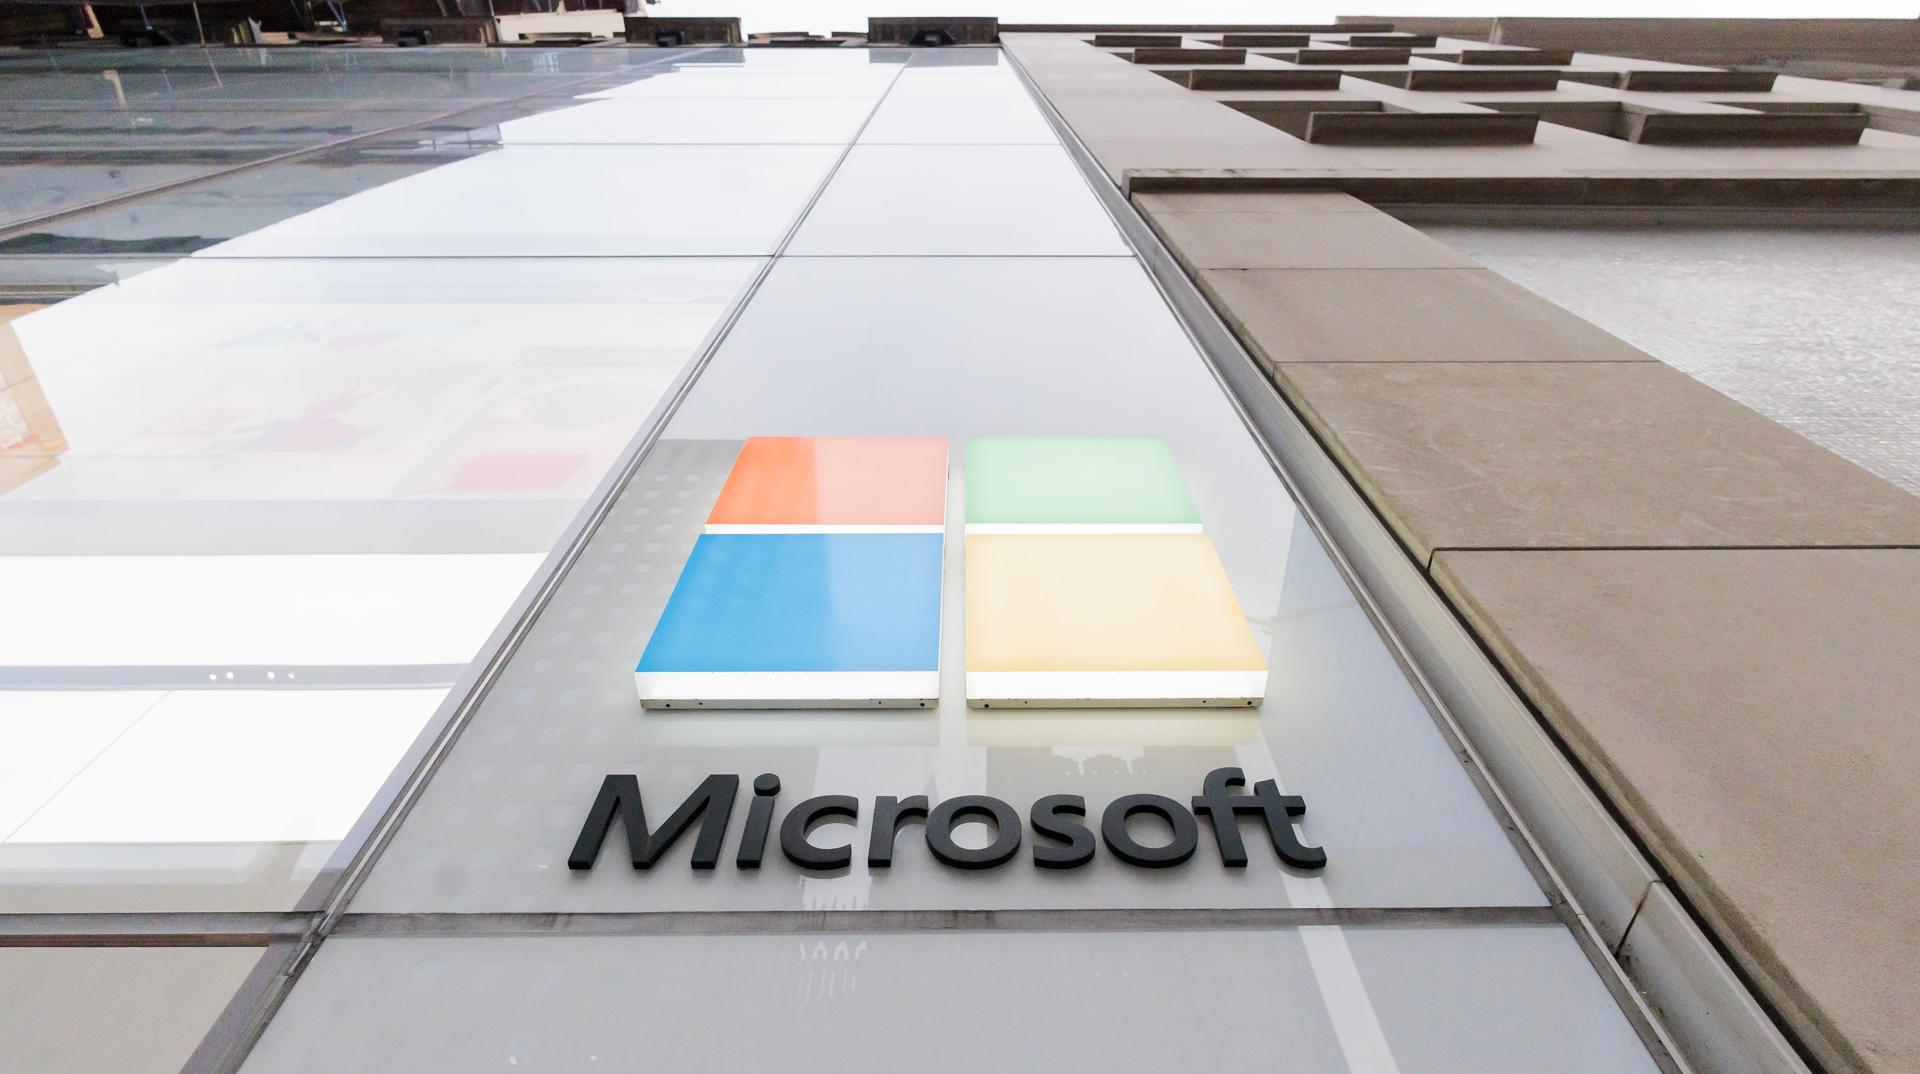 Vista del logo de Microsoft en una tienda en Nueva York, en una fotografía de archivo. EFE/Justin Lane